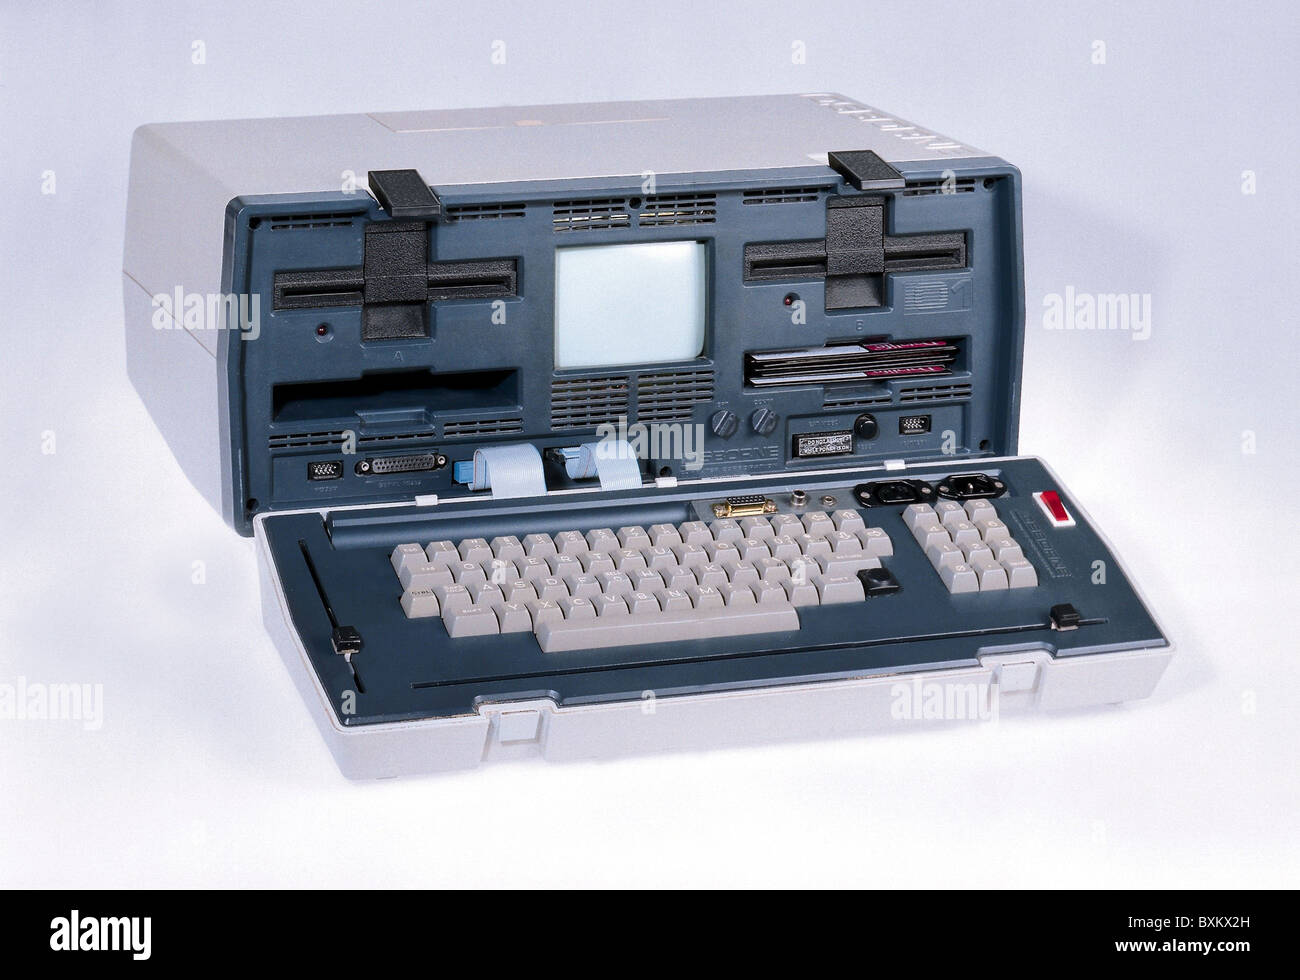 Informatique / électronique, ordinateur, ordinateur portable, Osborne-1, premier ordinateur portable, Etats-Unis, 1981, droits supplémentaires-Clearences-non disponible Banque D'Images